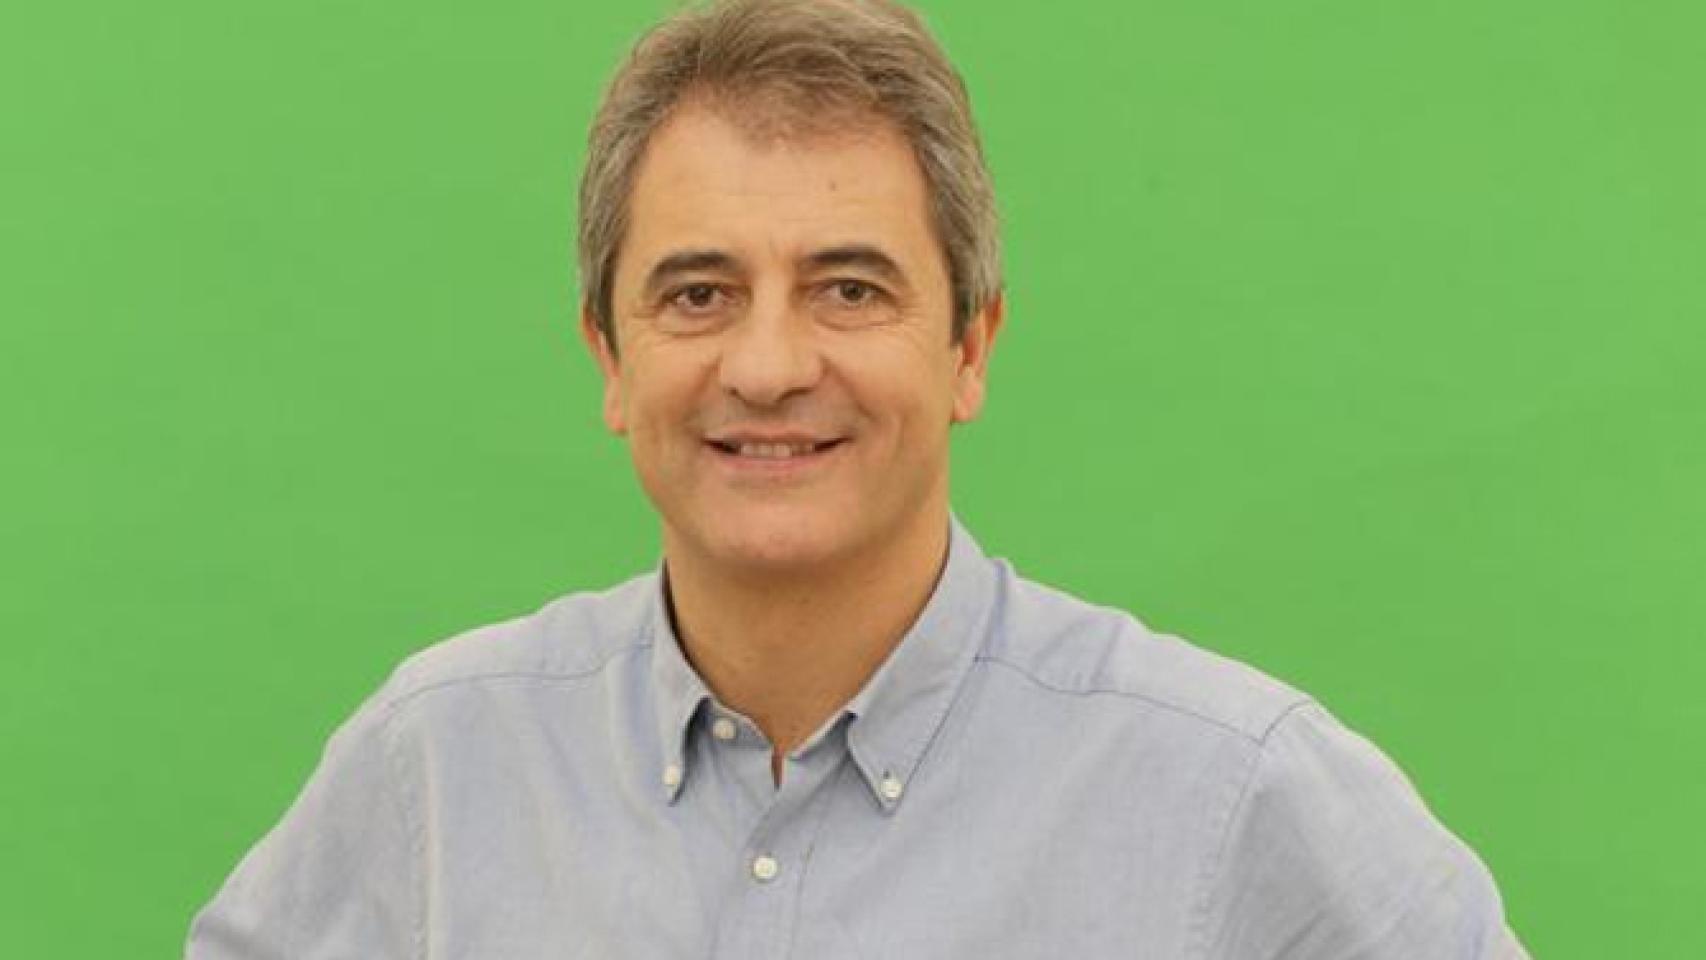 Manolo Lama ficha por Gol TV para competir contra Carreño y Pedrerol